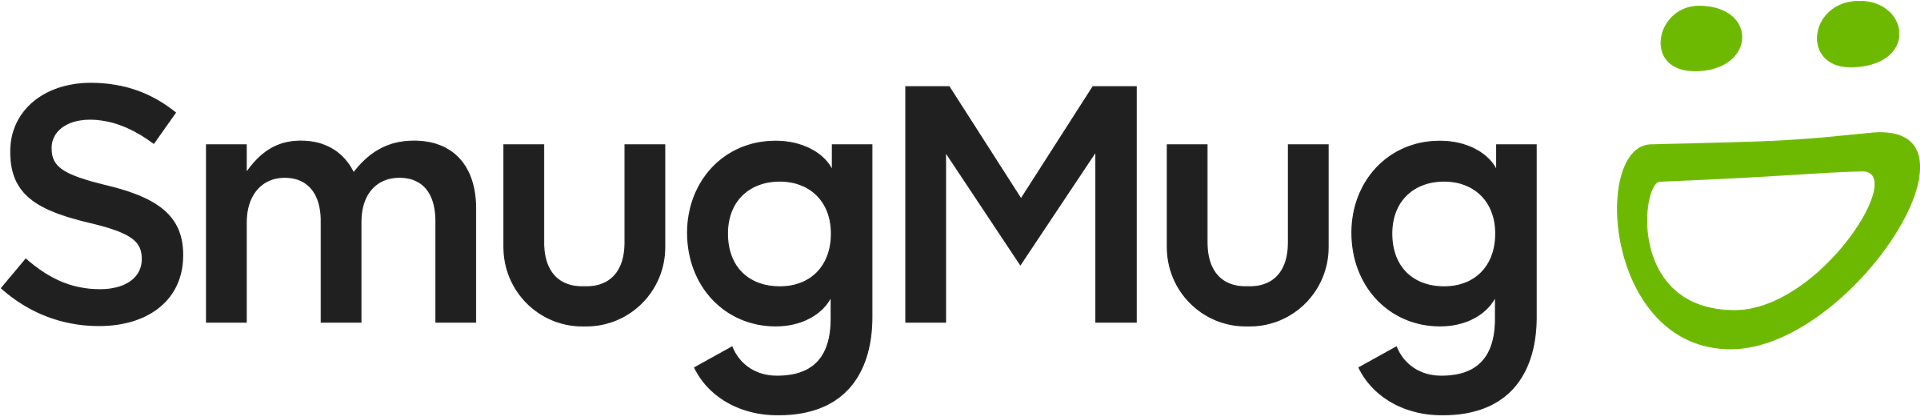 SmugMug Logo - The New SmugMug Logo